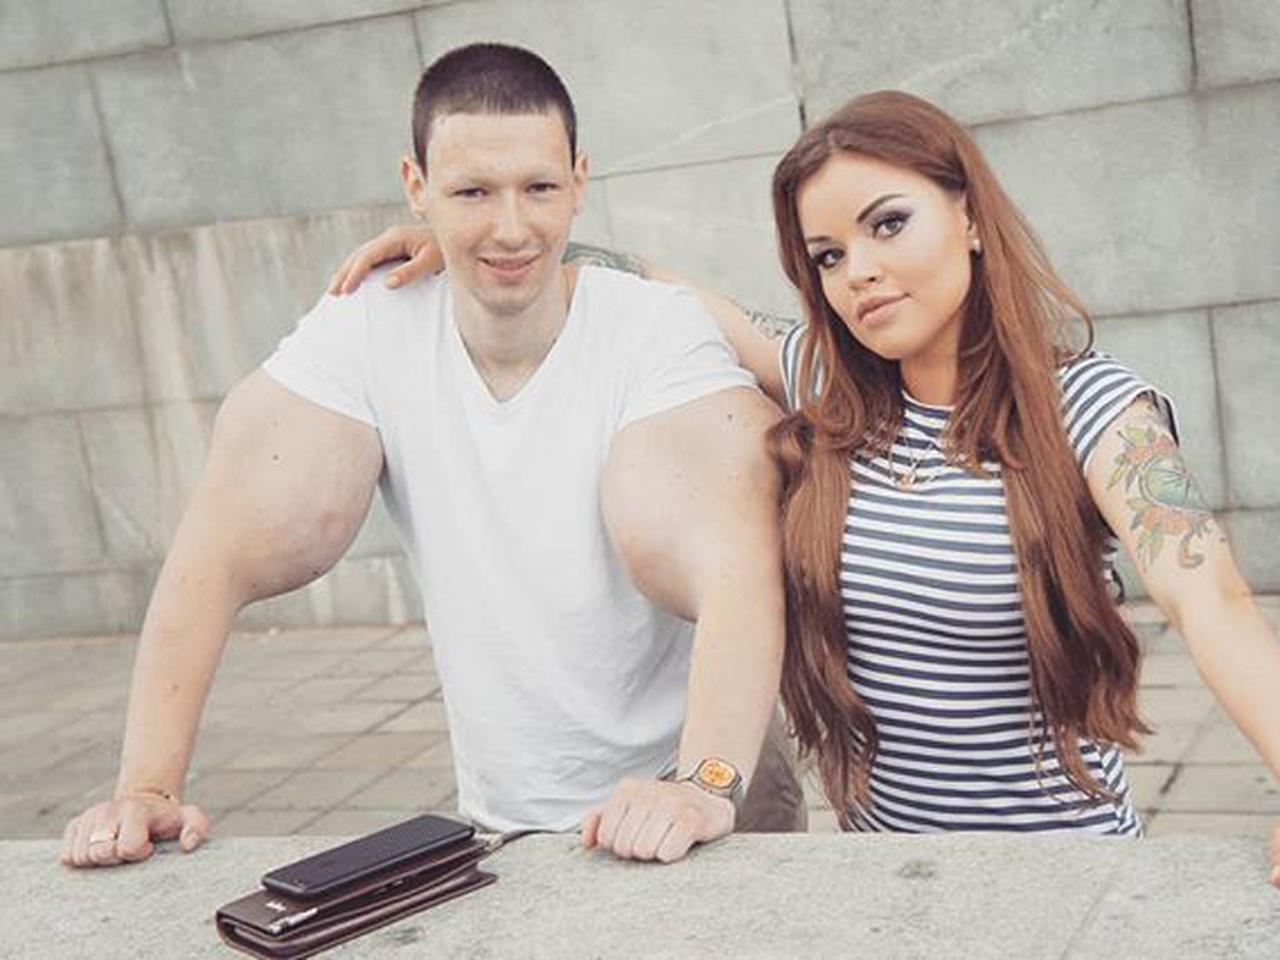 А секс — после ЗАГСа: жертва пластики «Руки-базуки» женится на эротической  модели | WMJ.ru